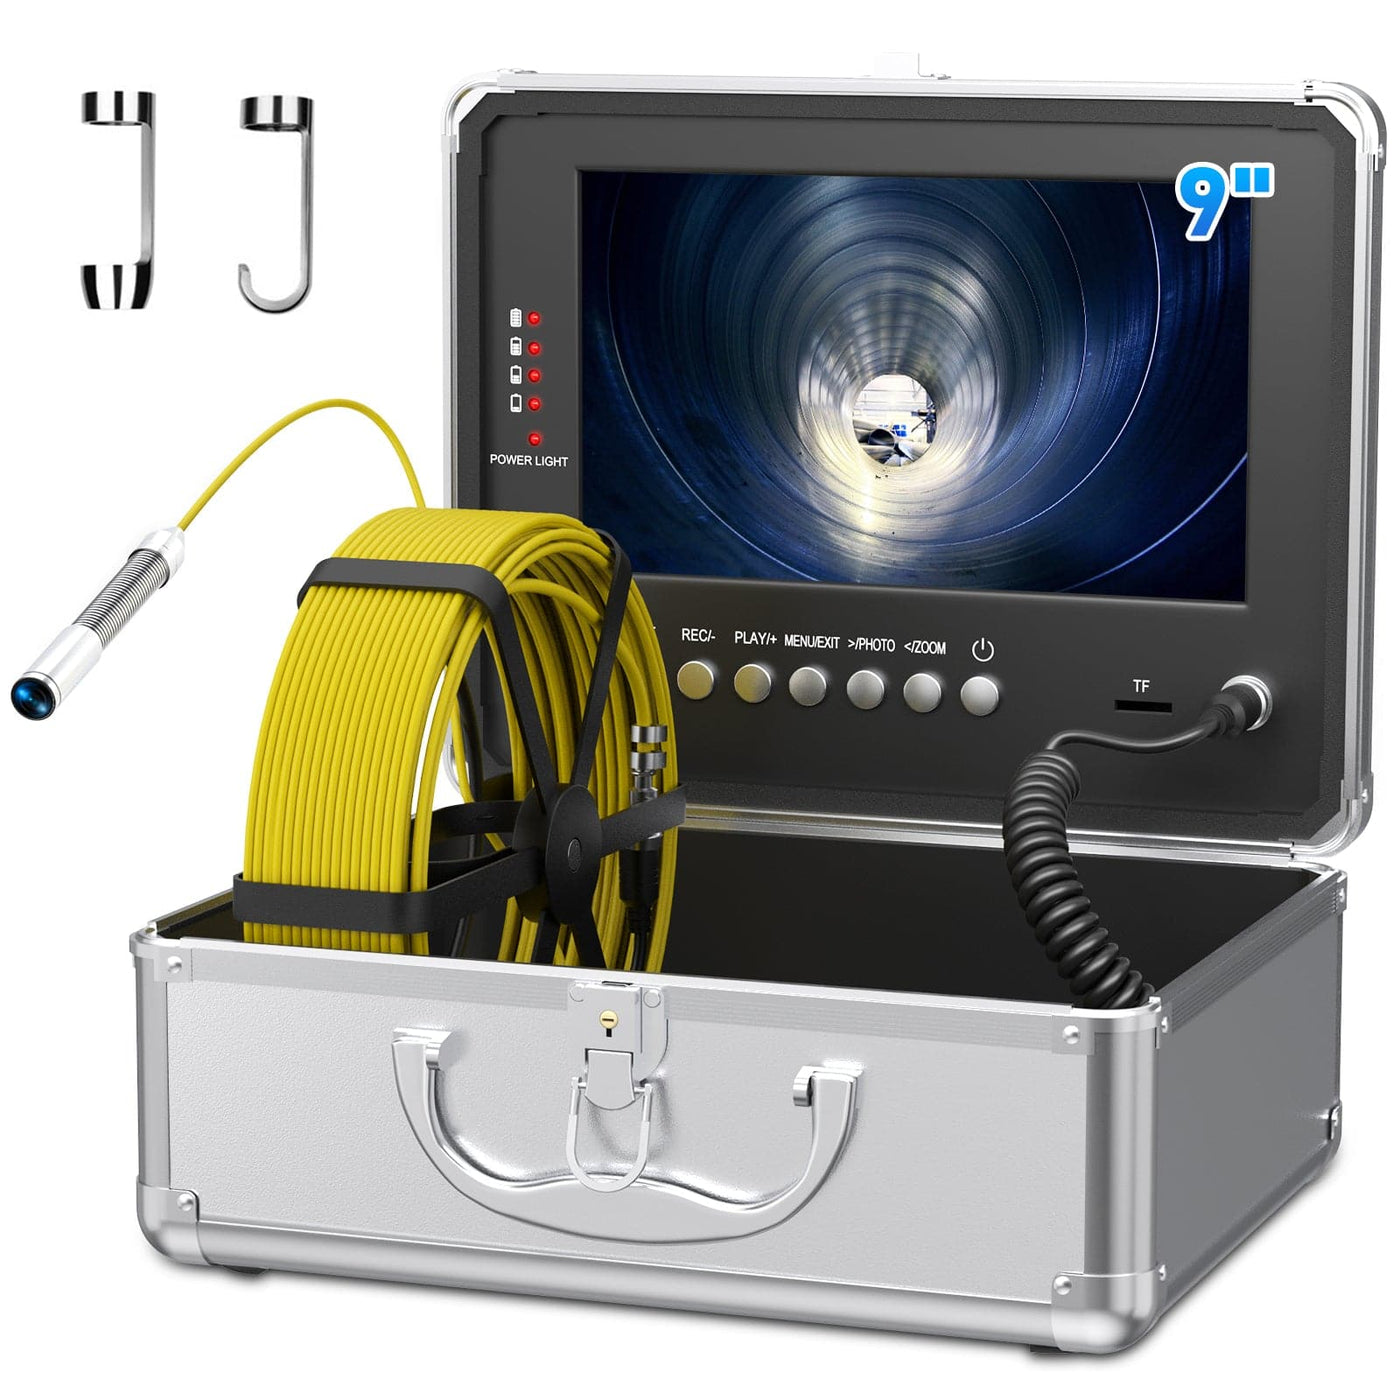 endoscopio industrial de drenaje de alcantarillado con monitor de 9 pulgadas | Sanyipace F9C13